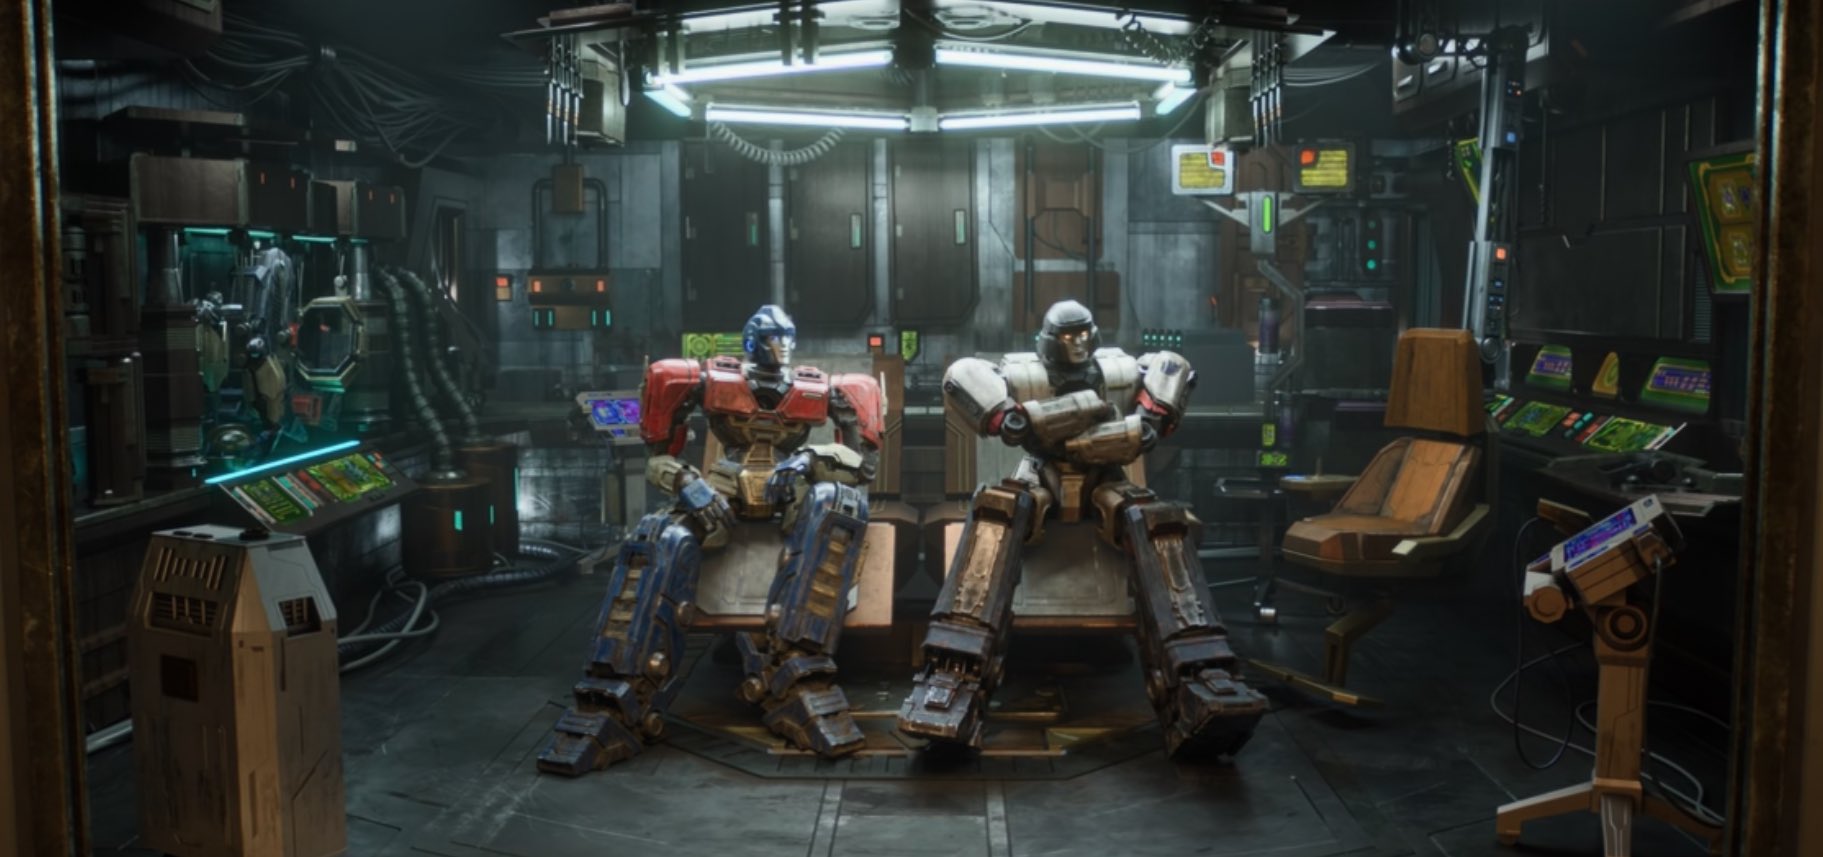 Transformers O Início imagem oficial